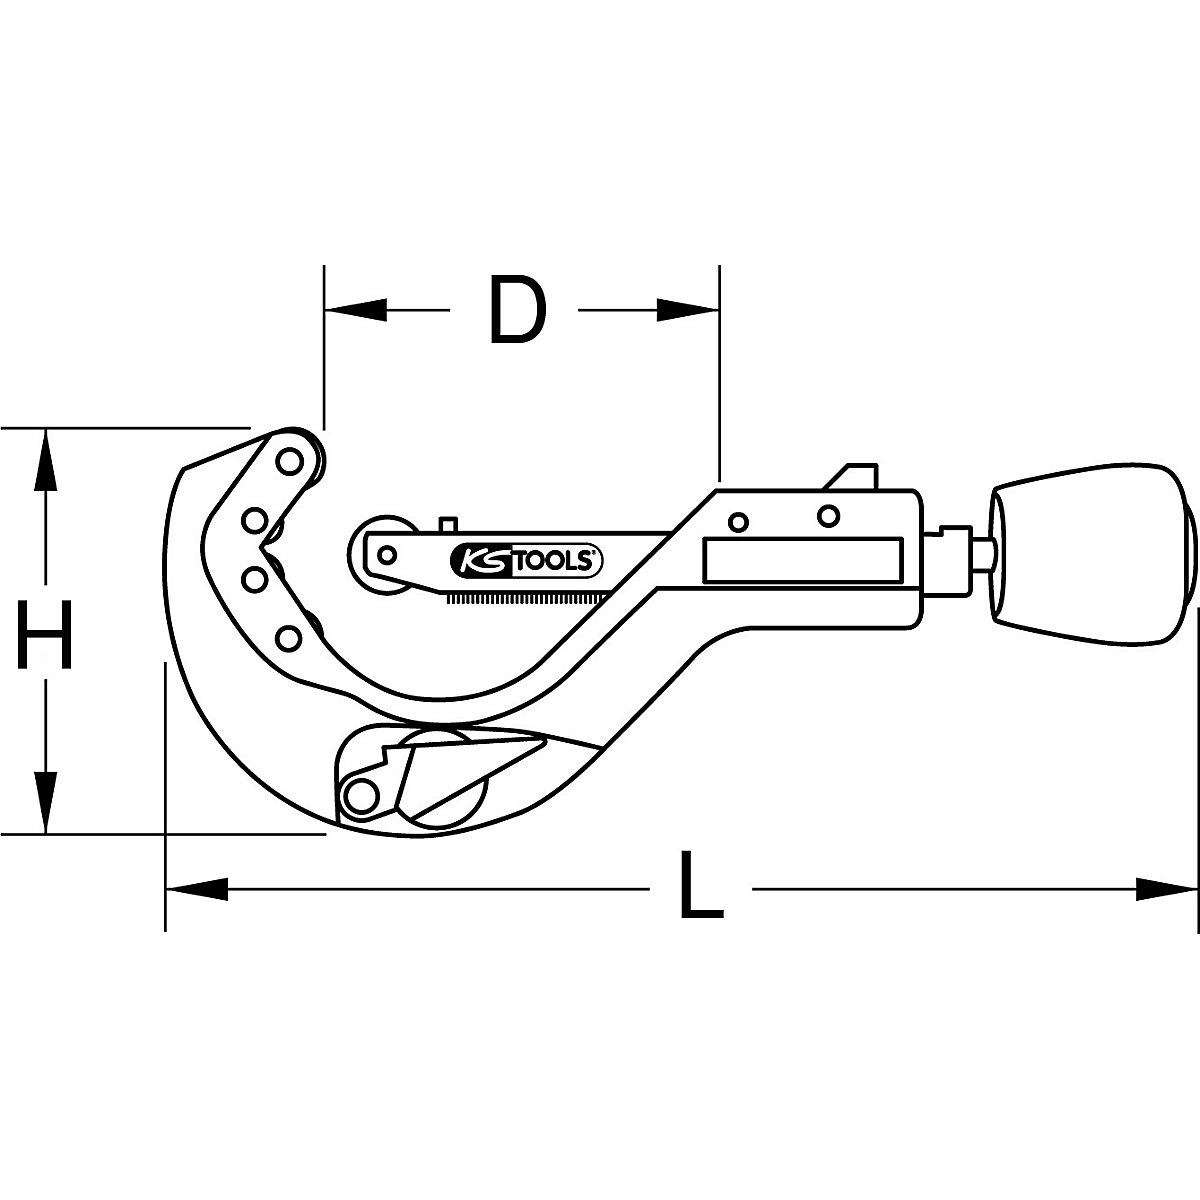 Samodejno rezilo za cevi – KS Tools (Slika izdelka 2)-1